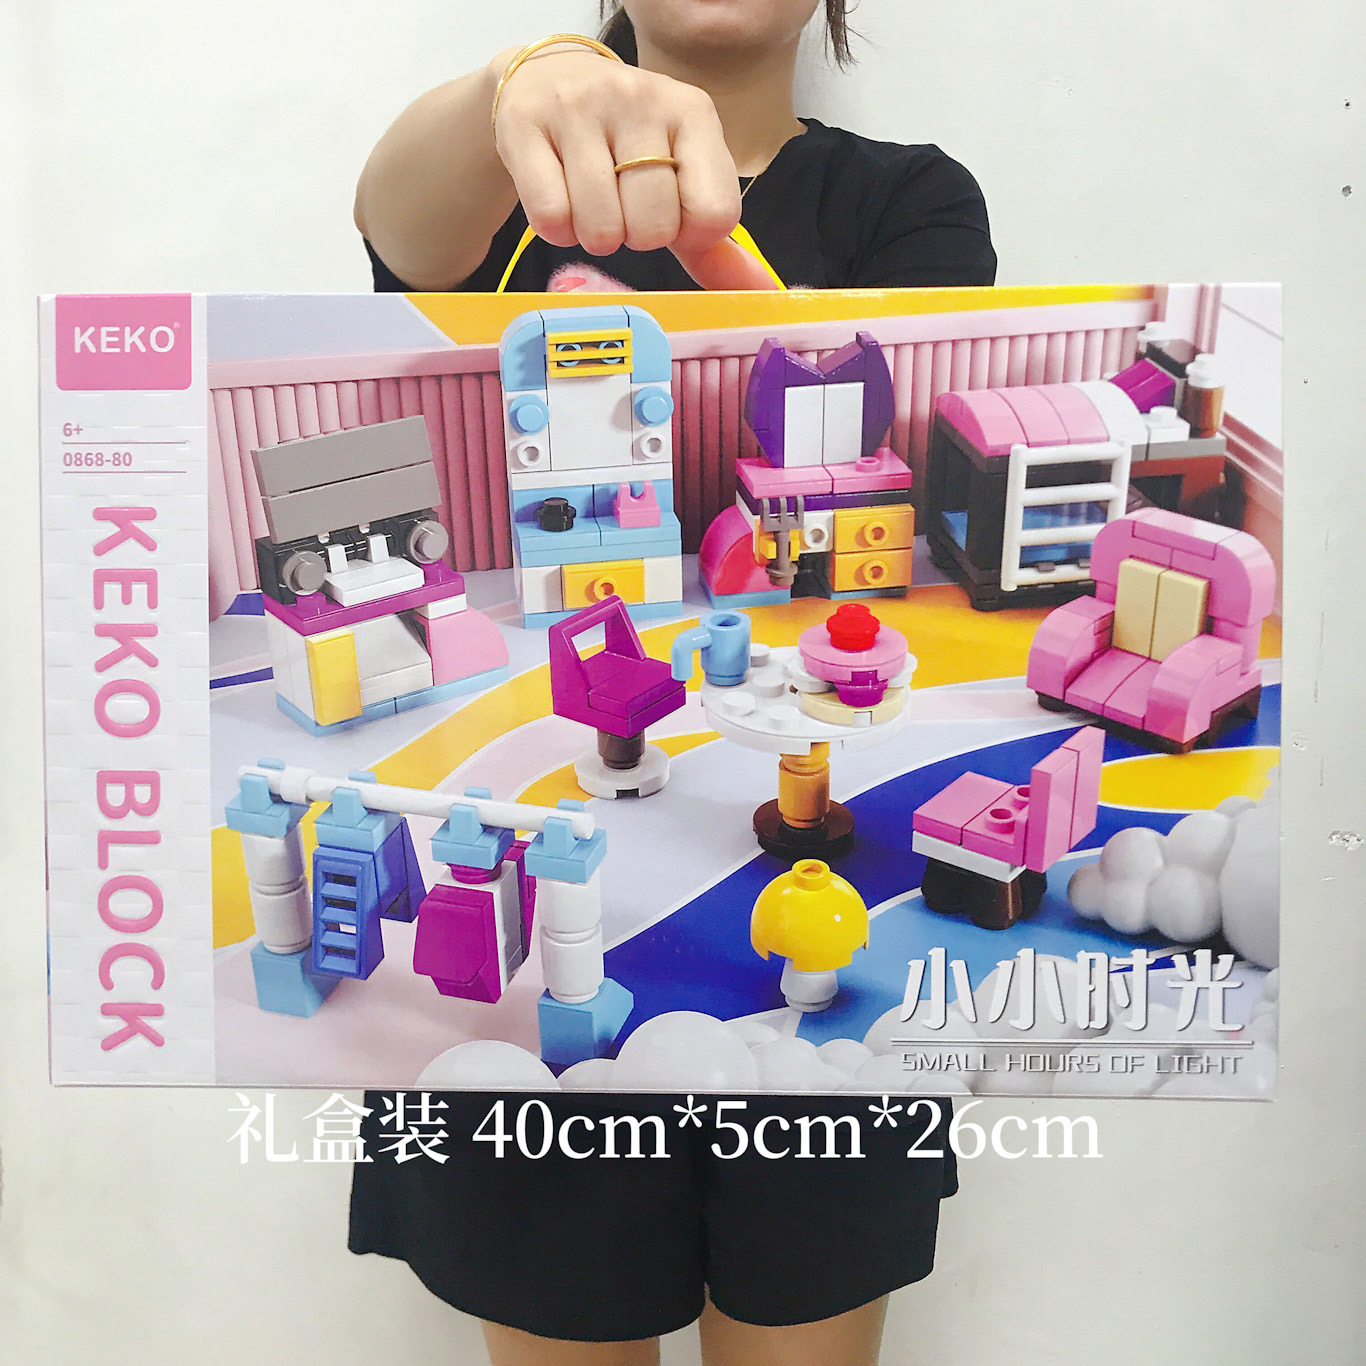 新款儿童积木女孩城堡游乐园益智拼装玩具培训机构赠品生日礼物大